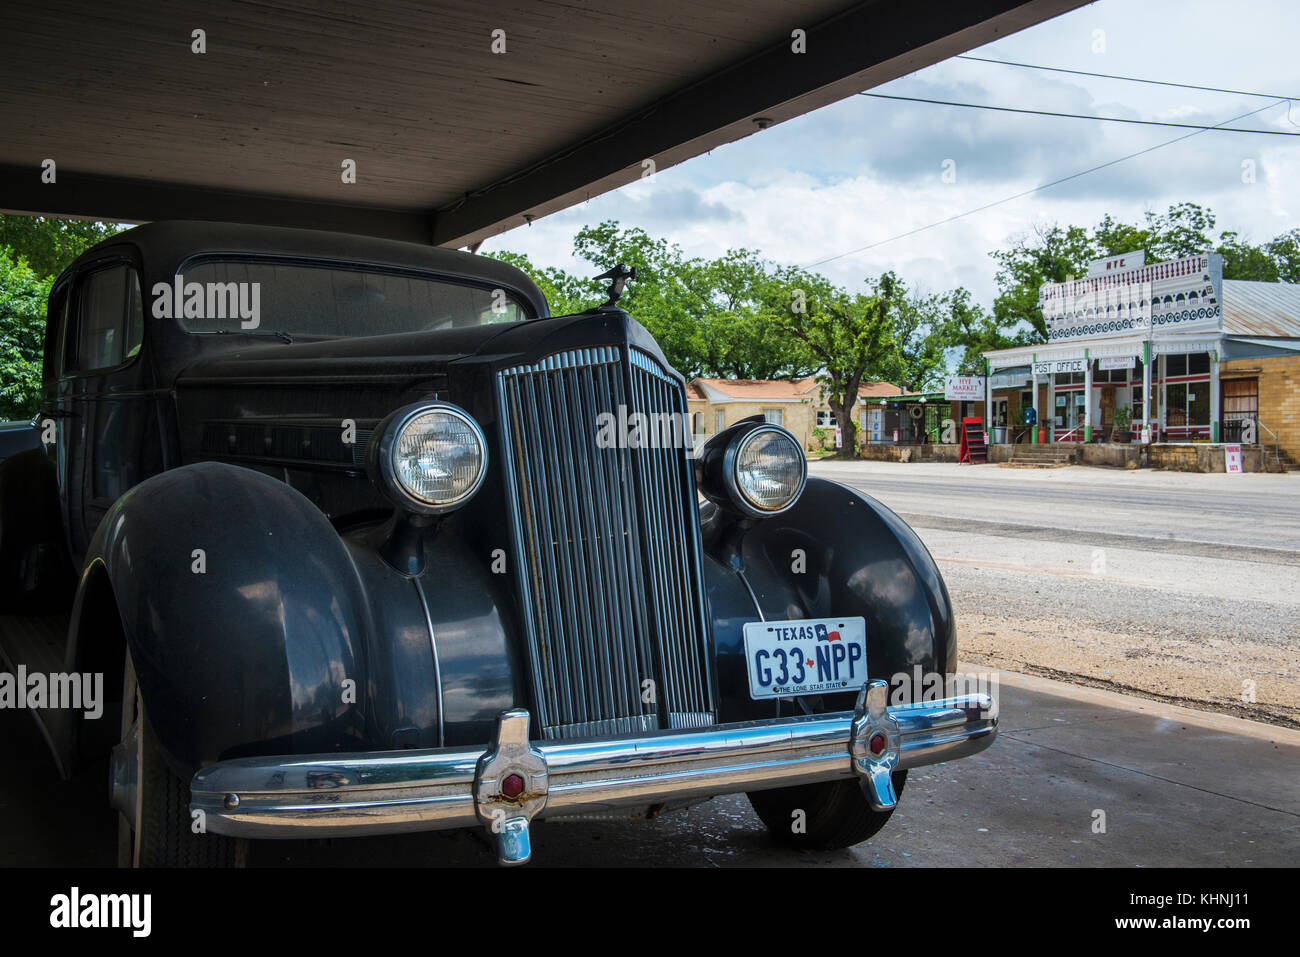 Hye, Texas - Juni 8, 2014: Ein altes Auto mit dem General Store und der Post auf dem Hintergrund in der kleinen Stadt hye in Texas, USA. Stockfoto